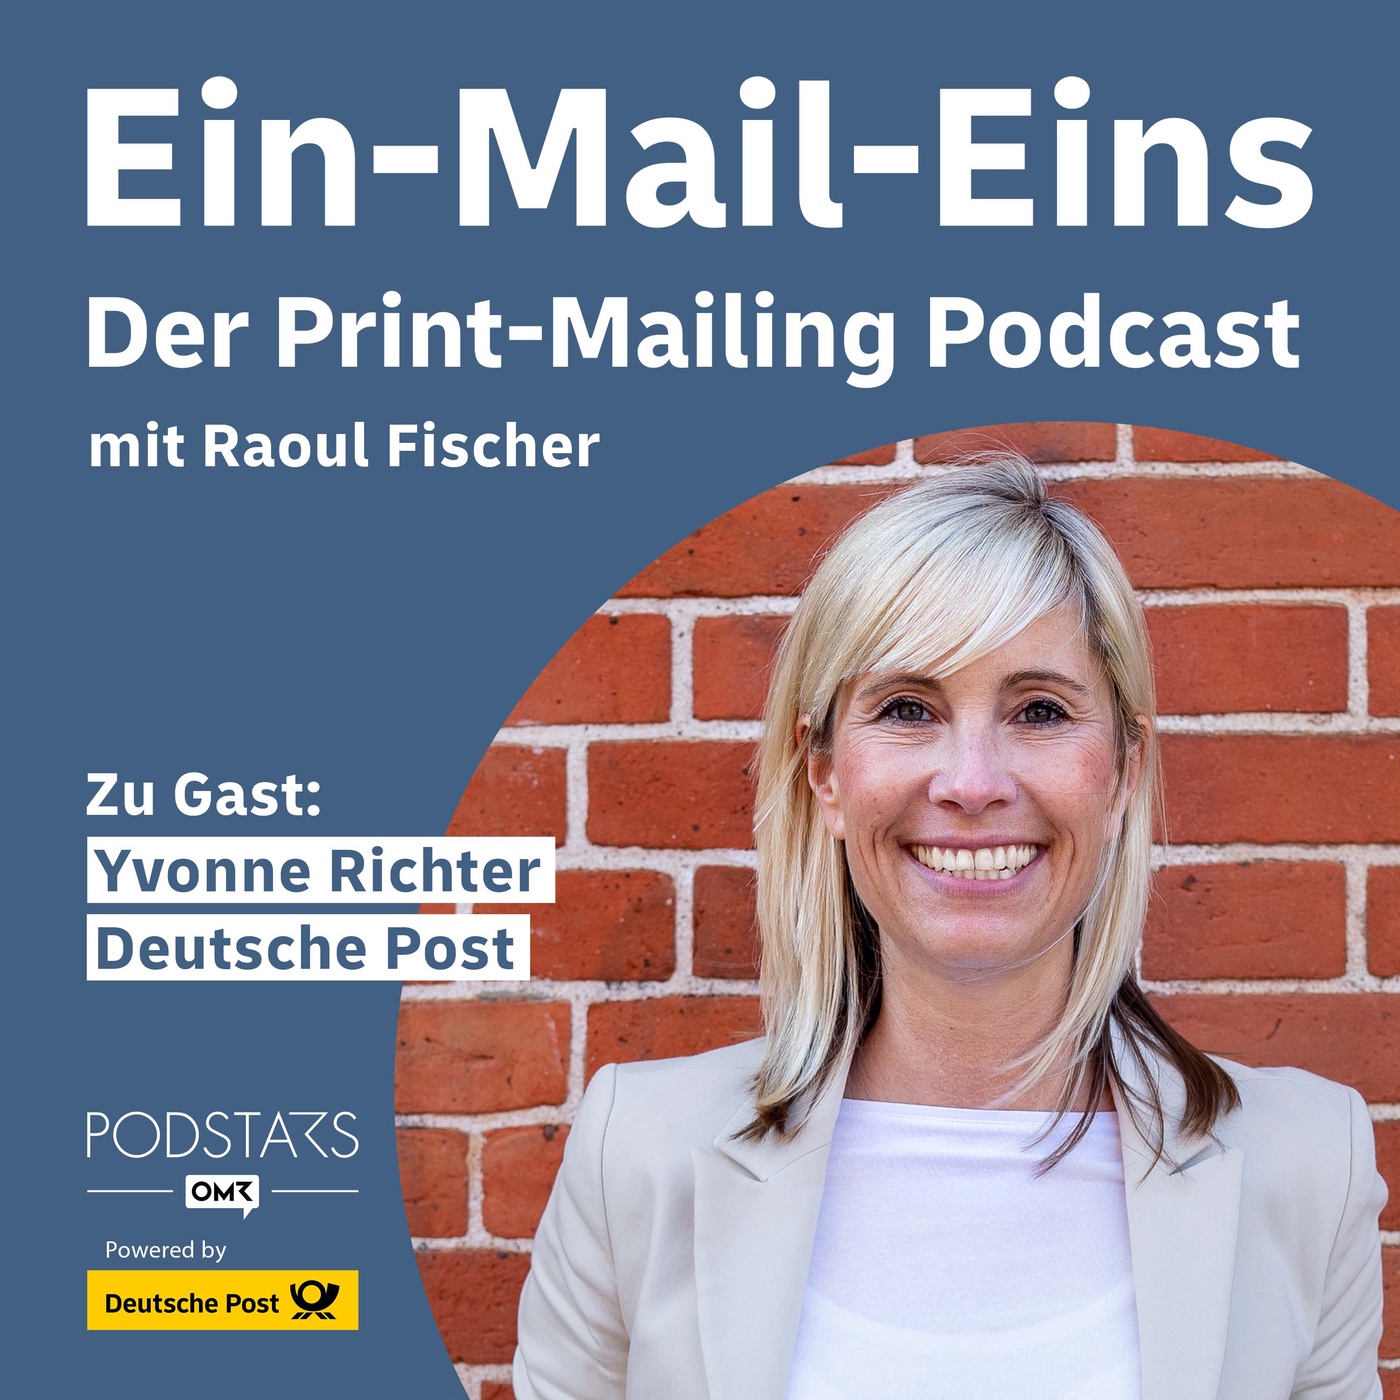 #9 Mein erstes Ma(i)l: So einfach geht Print-Mailing – mit Yvonne Richter, Deutsche Post